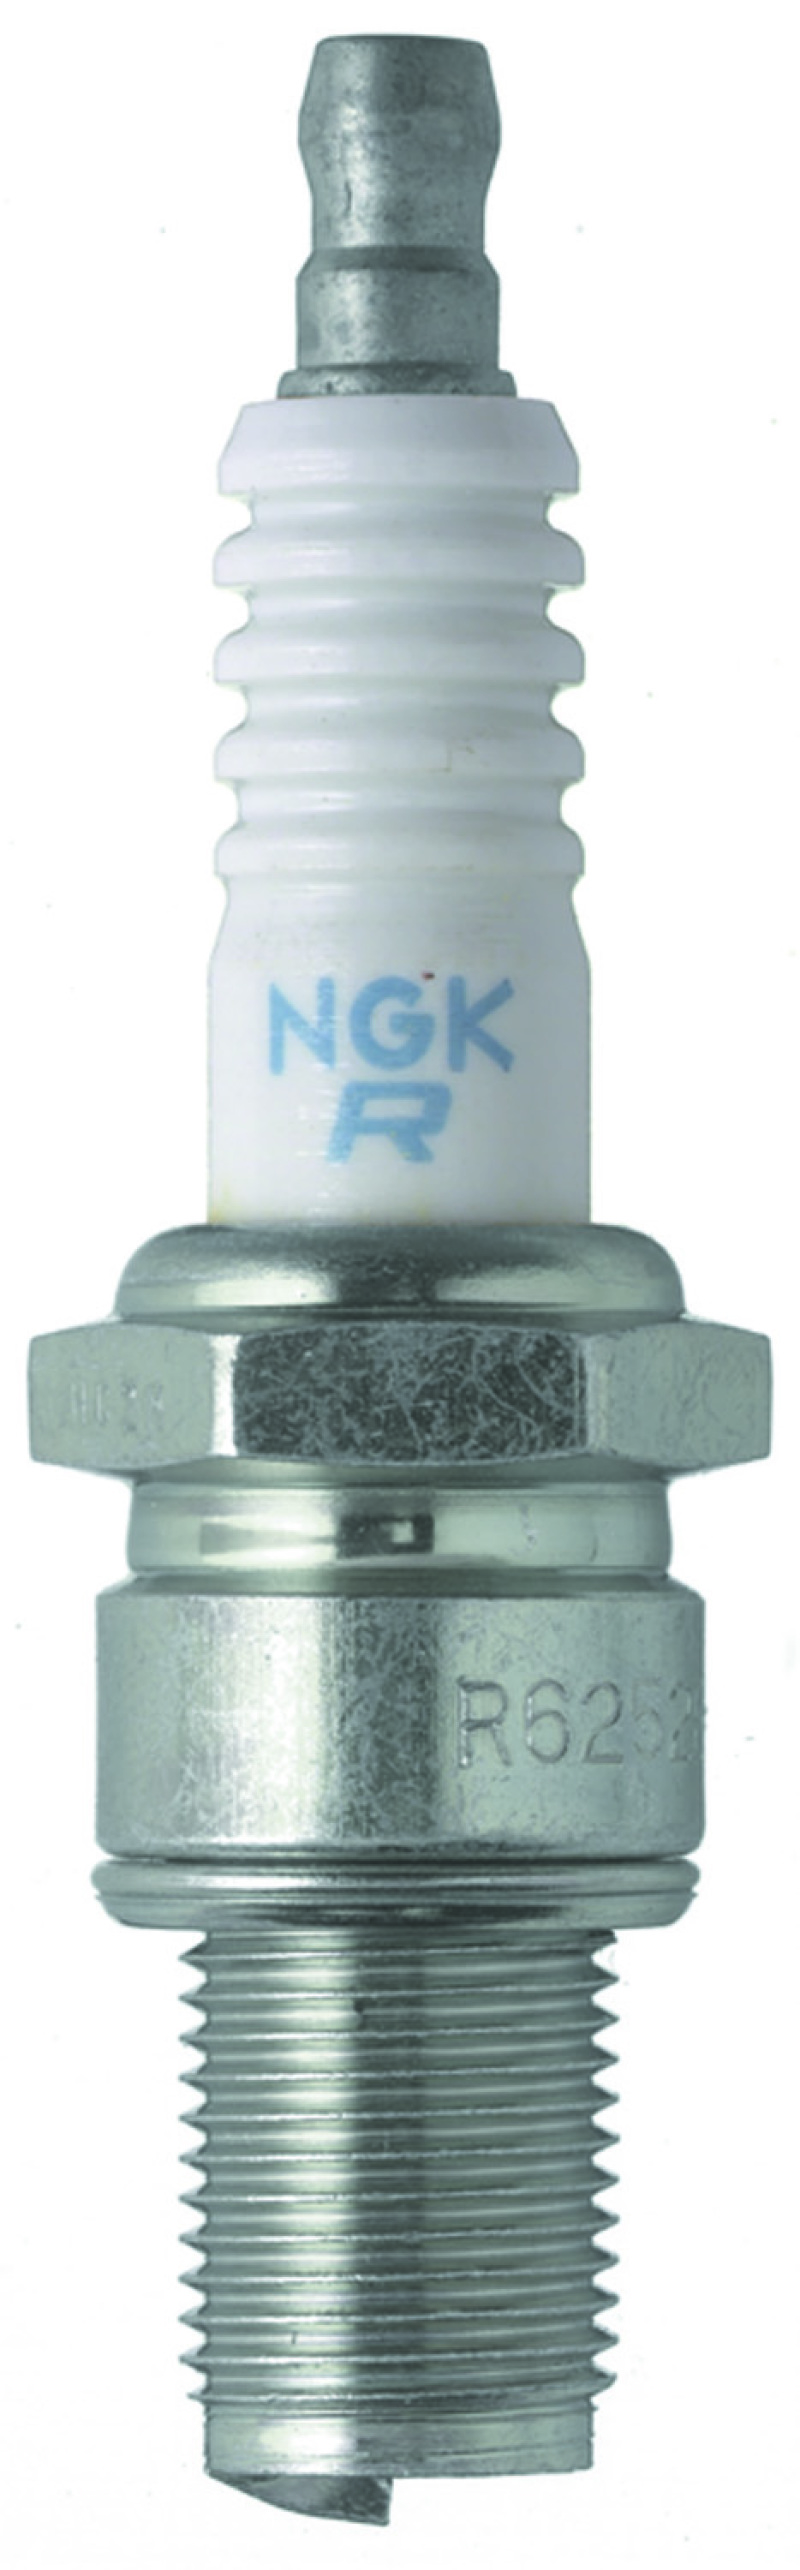 NGK Racing Spark Plug Box of 4 (R6254E-105) - 3949